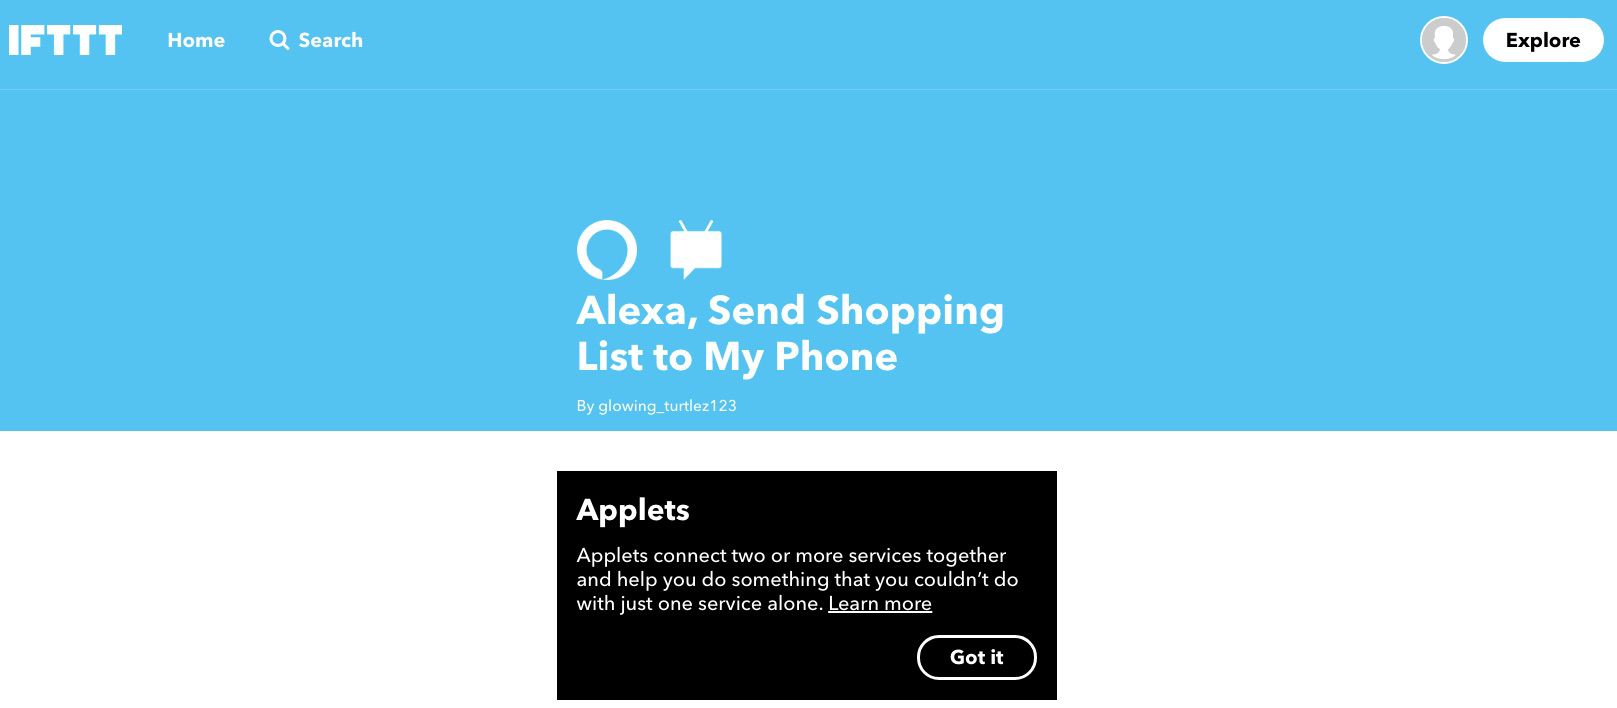 Captura de tela do miniaplicativo IFTTT que permite que Alexa envie a lista de compras para o telefone